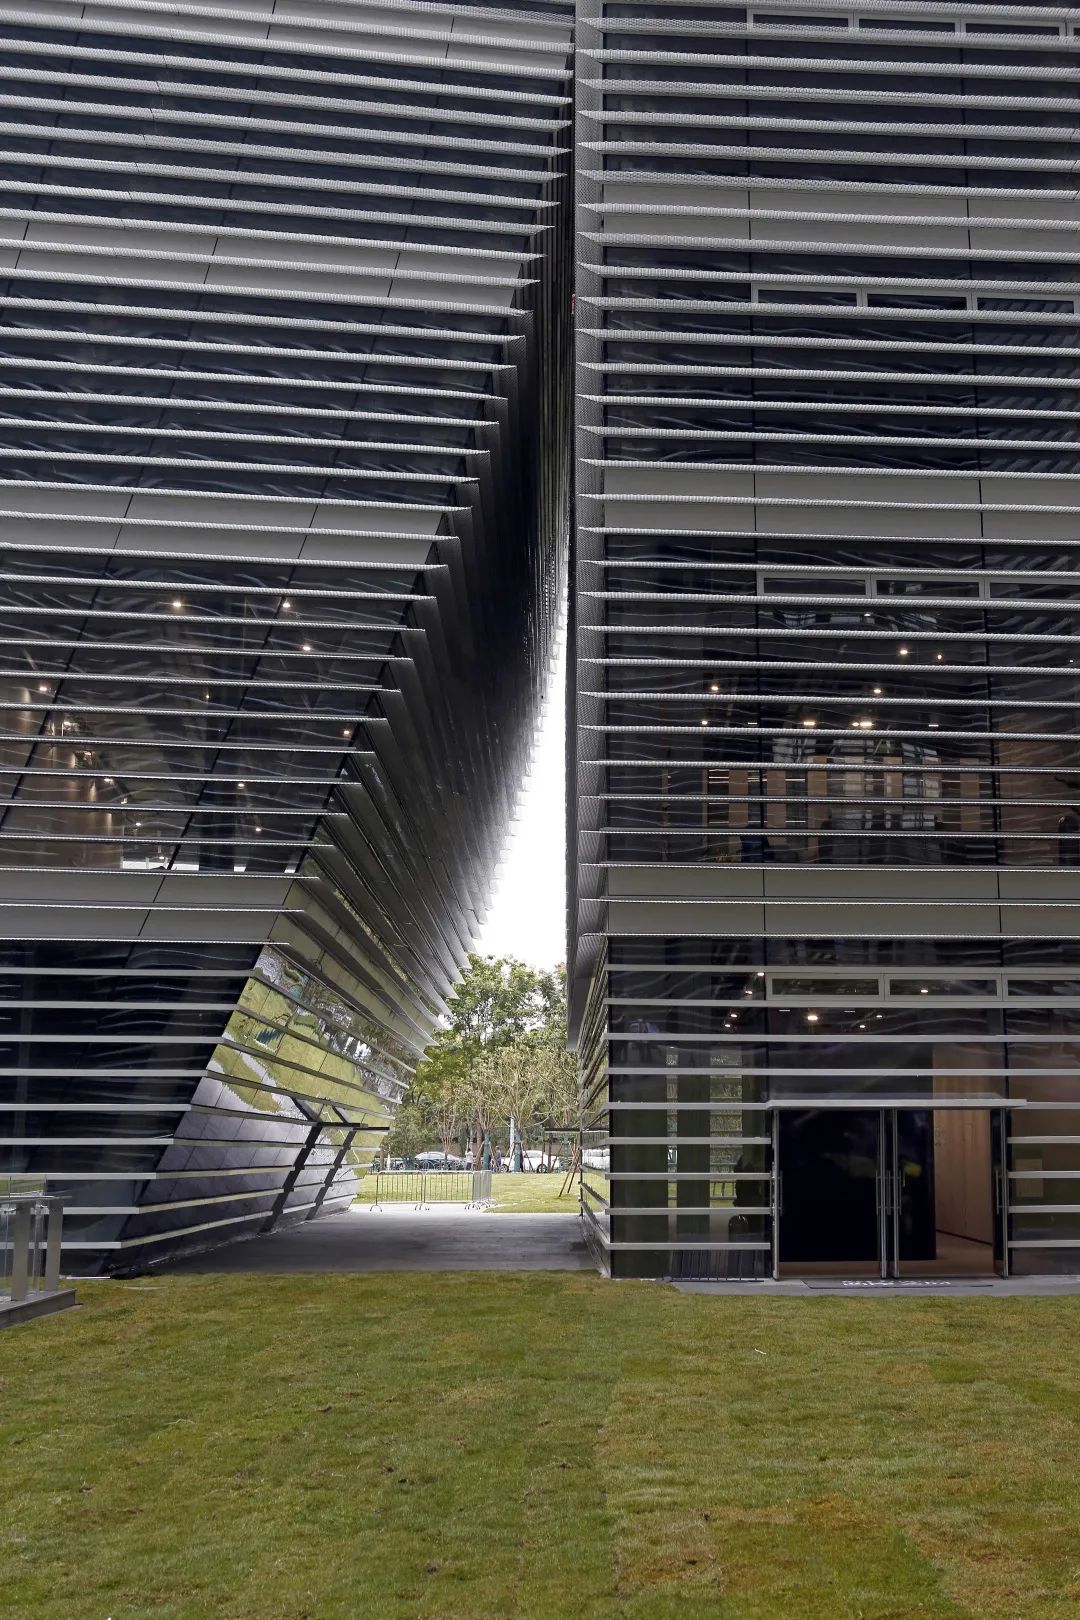 妹岛和世在中国的首个建筑项目，西岸艺岛Art Tower迎接全球艺术品交易迈入“上海时间”